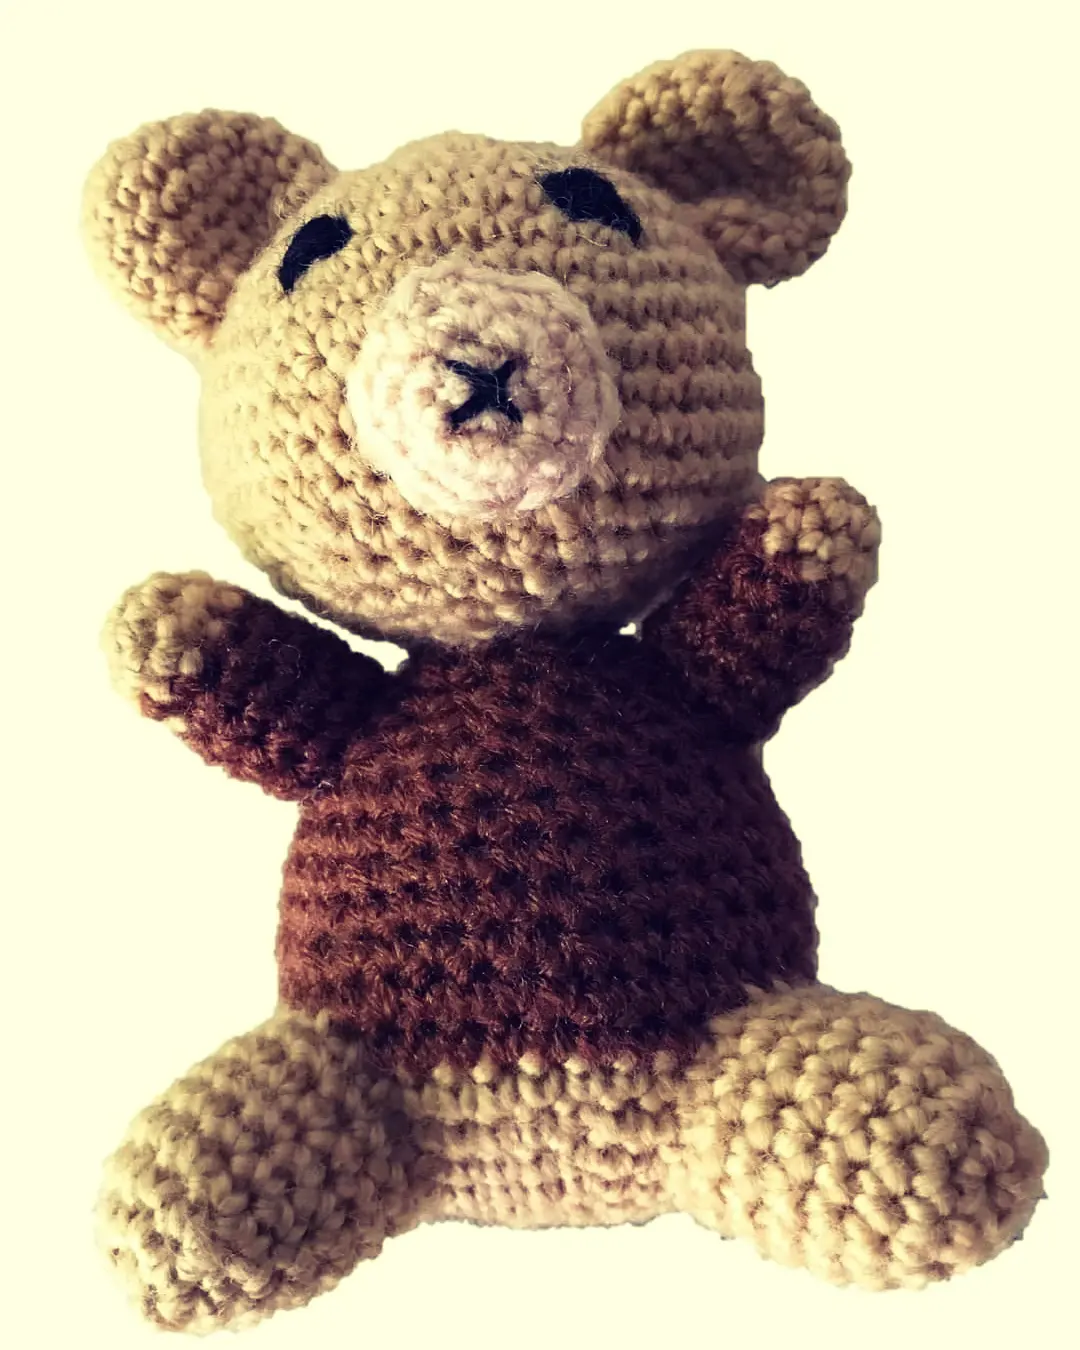 Lyfgoods Crochet Teddy Bear(5") uploaded by Lyfgoods on 3/7/2022